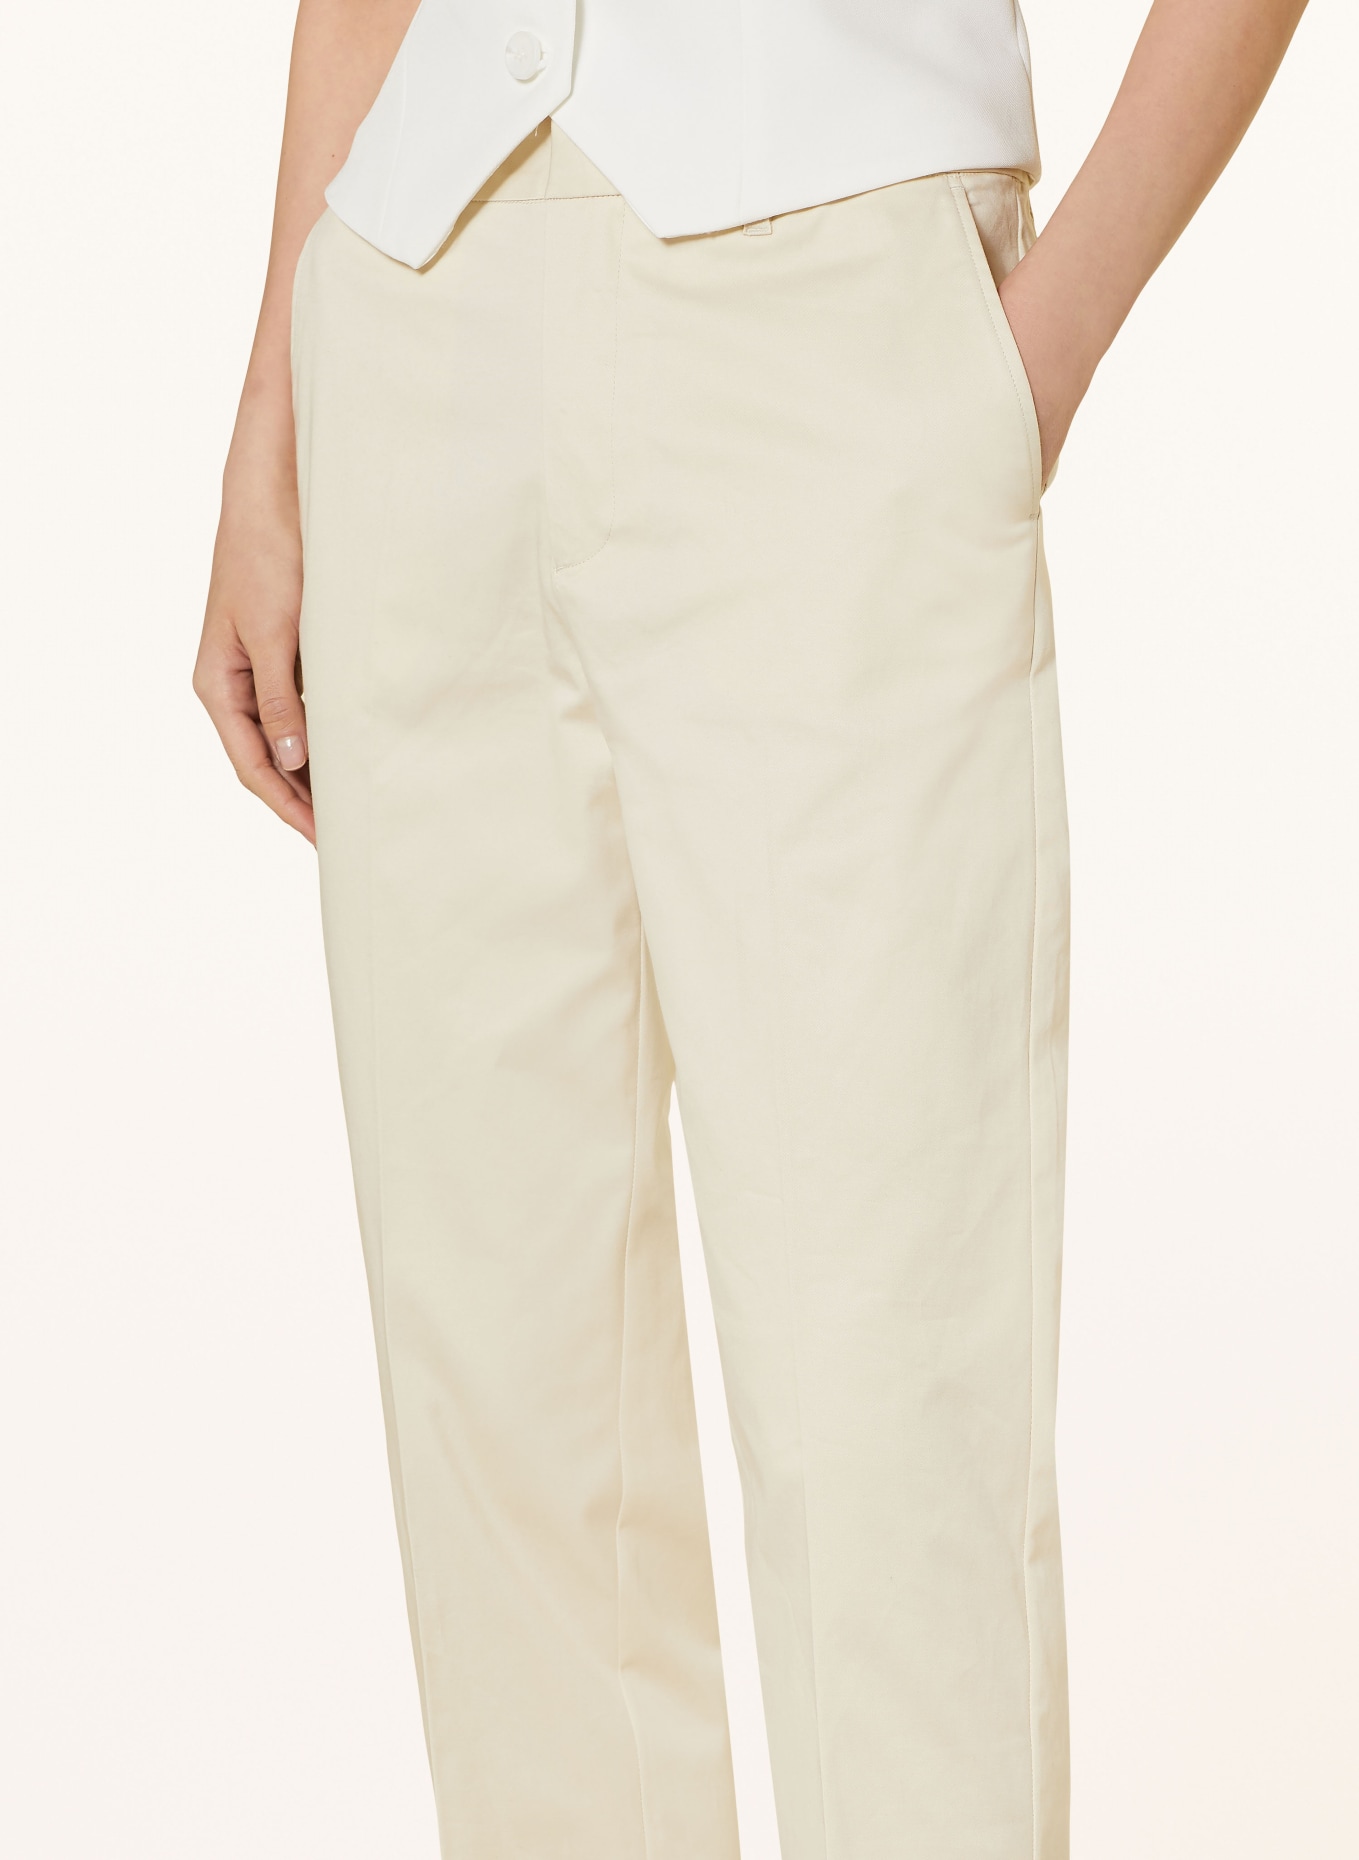 SCOTCH & SODA 7/8 trousers ABOTT, Color: ECRU (Image 5)